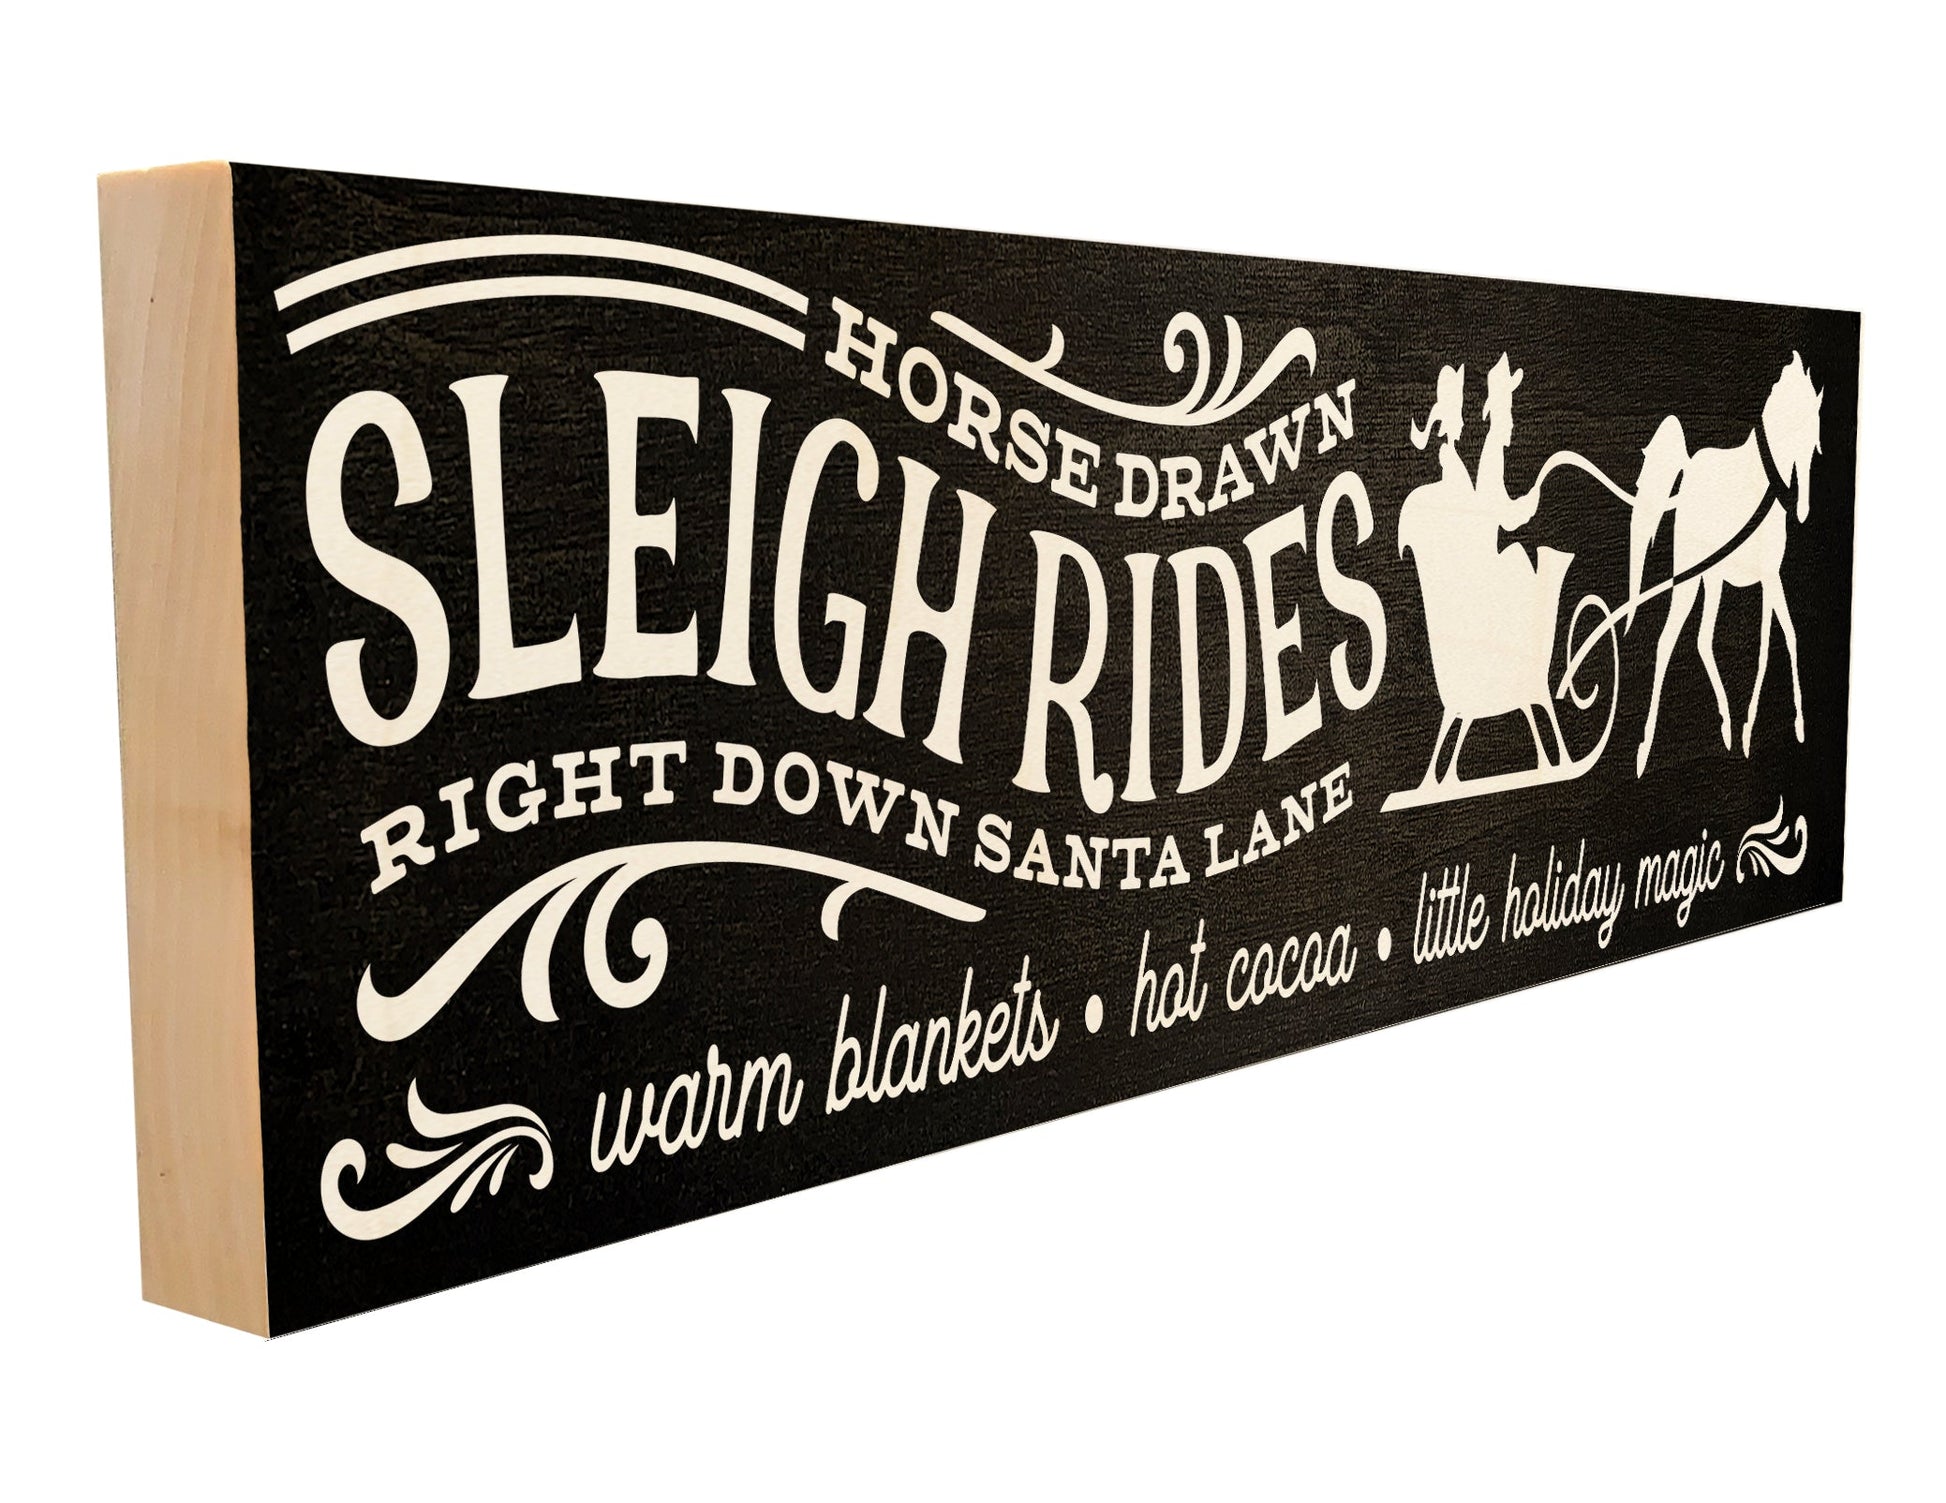 Horse Drawn Sleigh Rides.